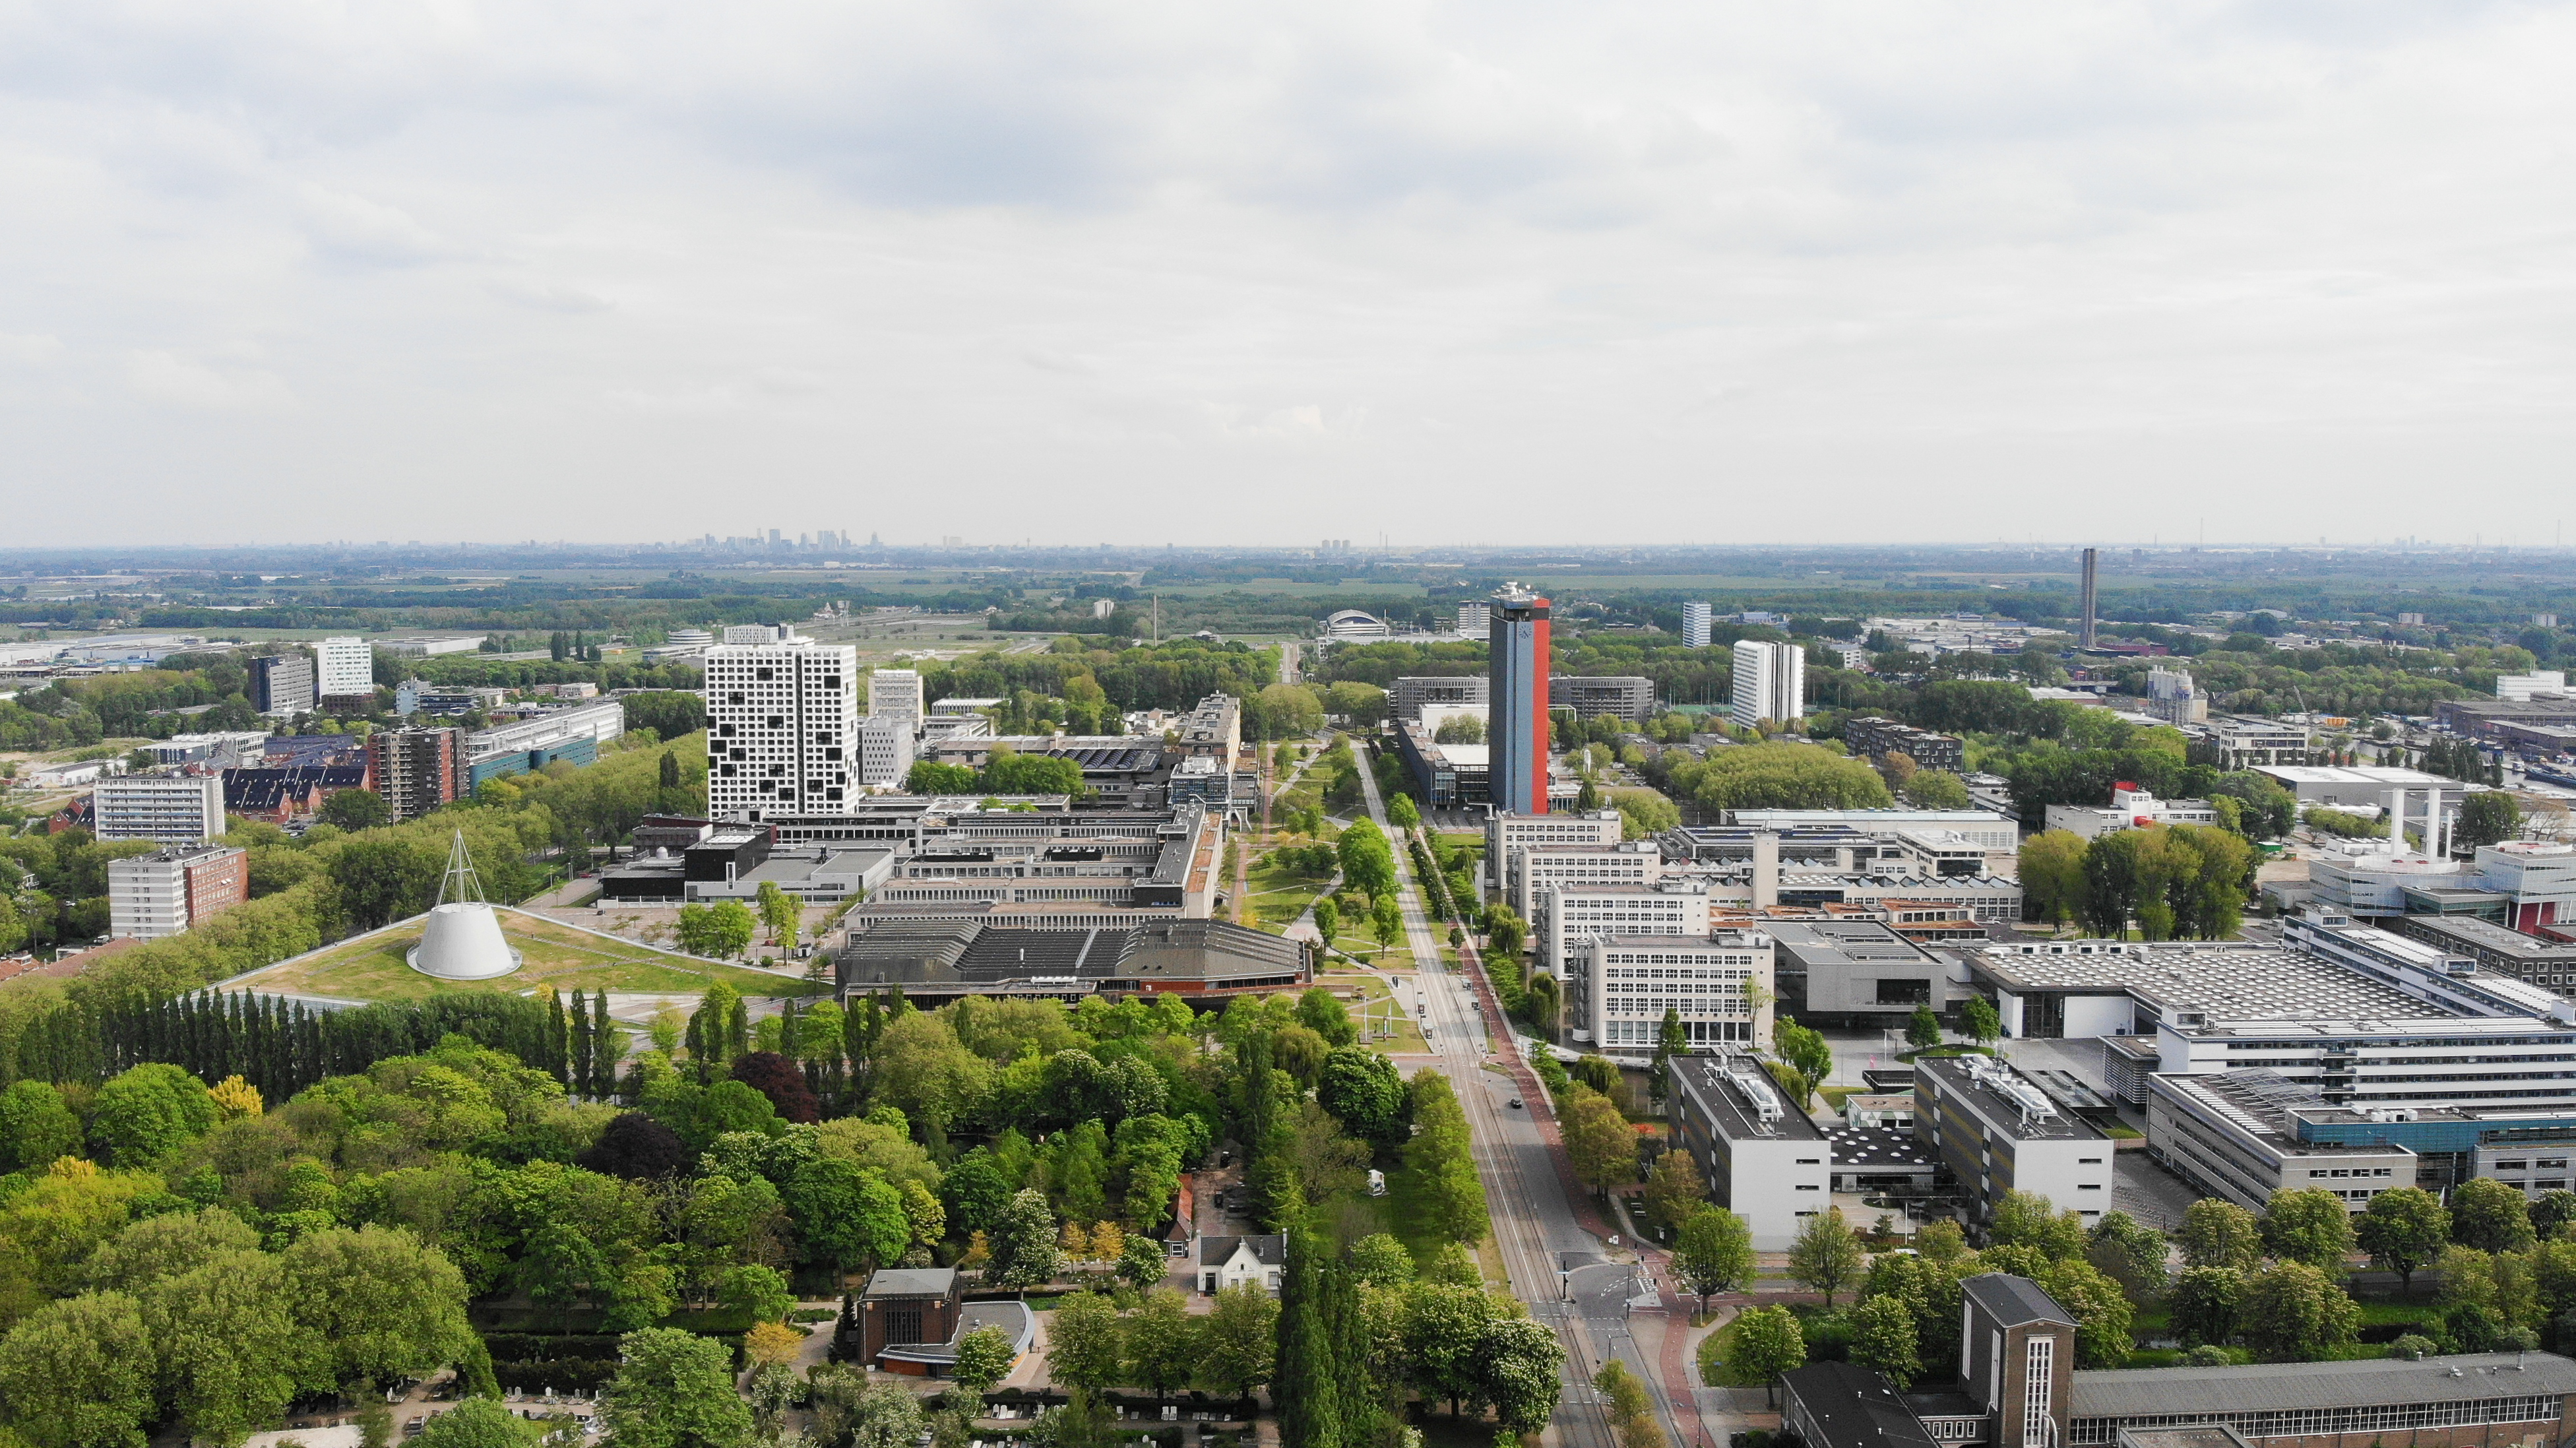 Aeriel view of TU Delft